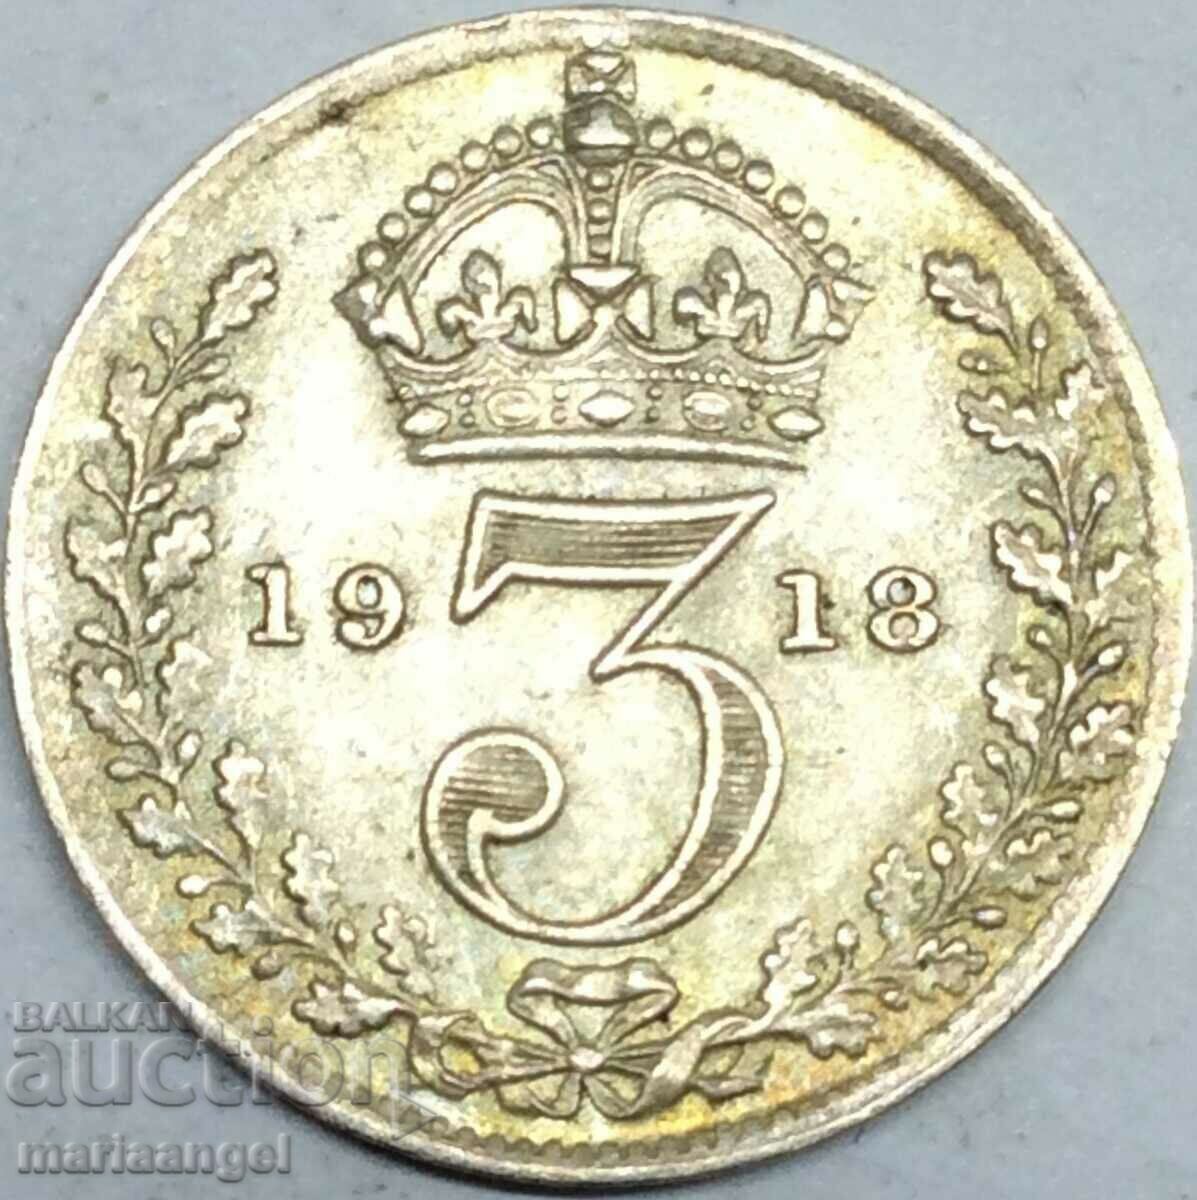 Marea Britanie 3 pence 1918 patina de argint